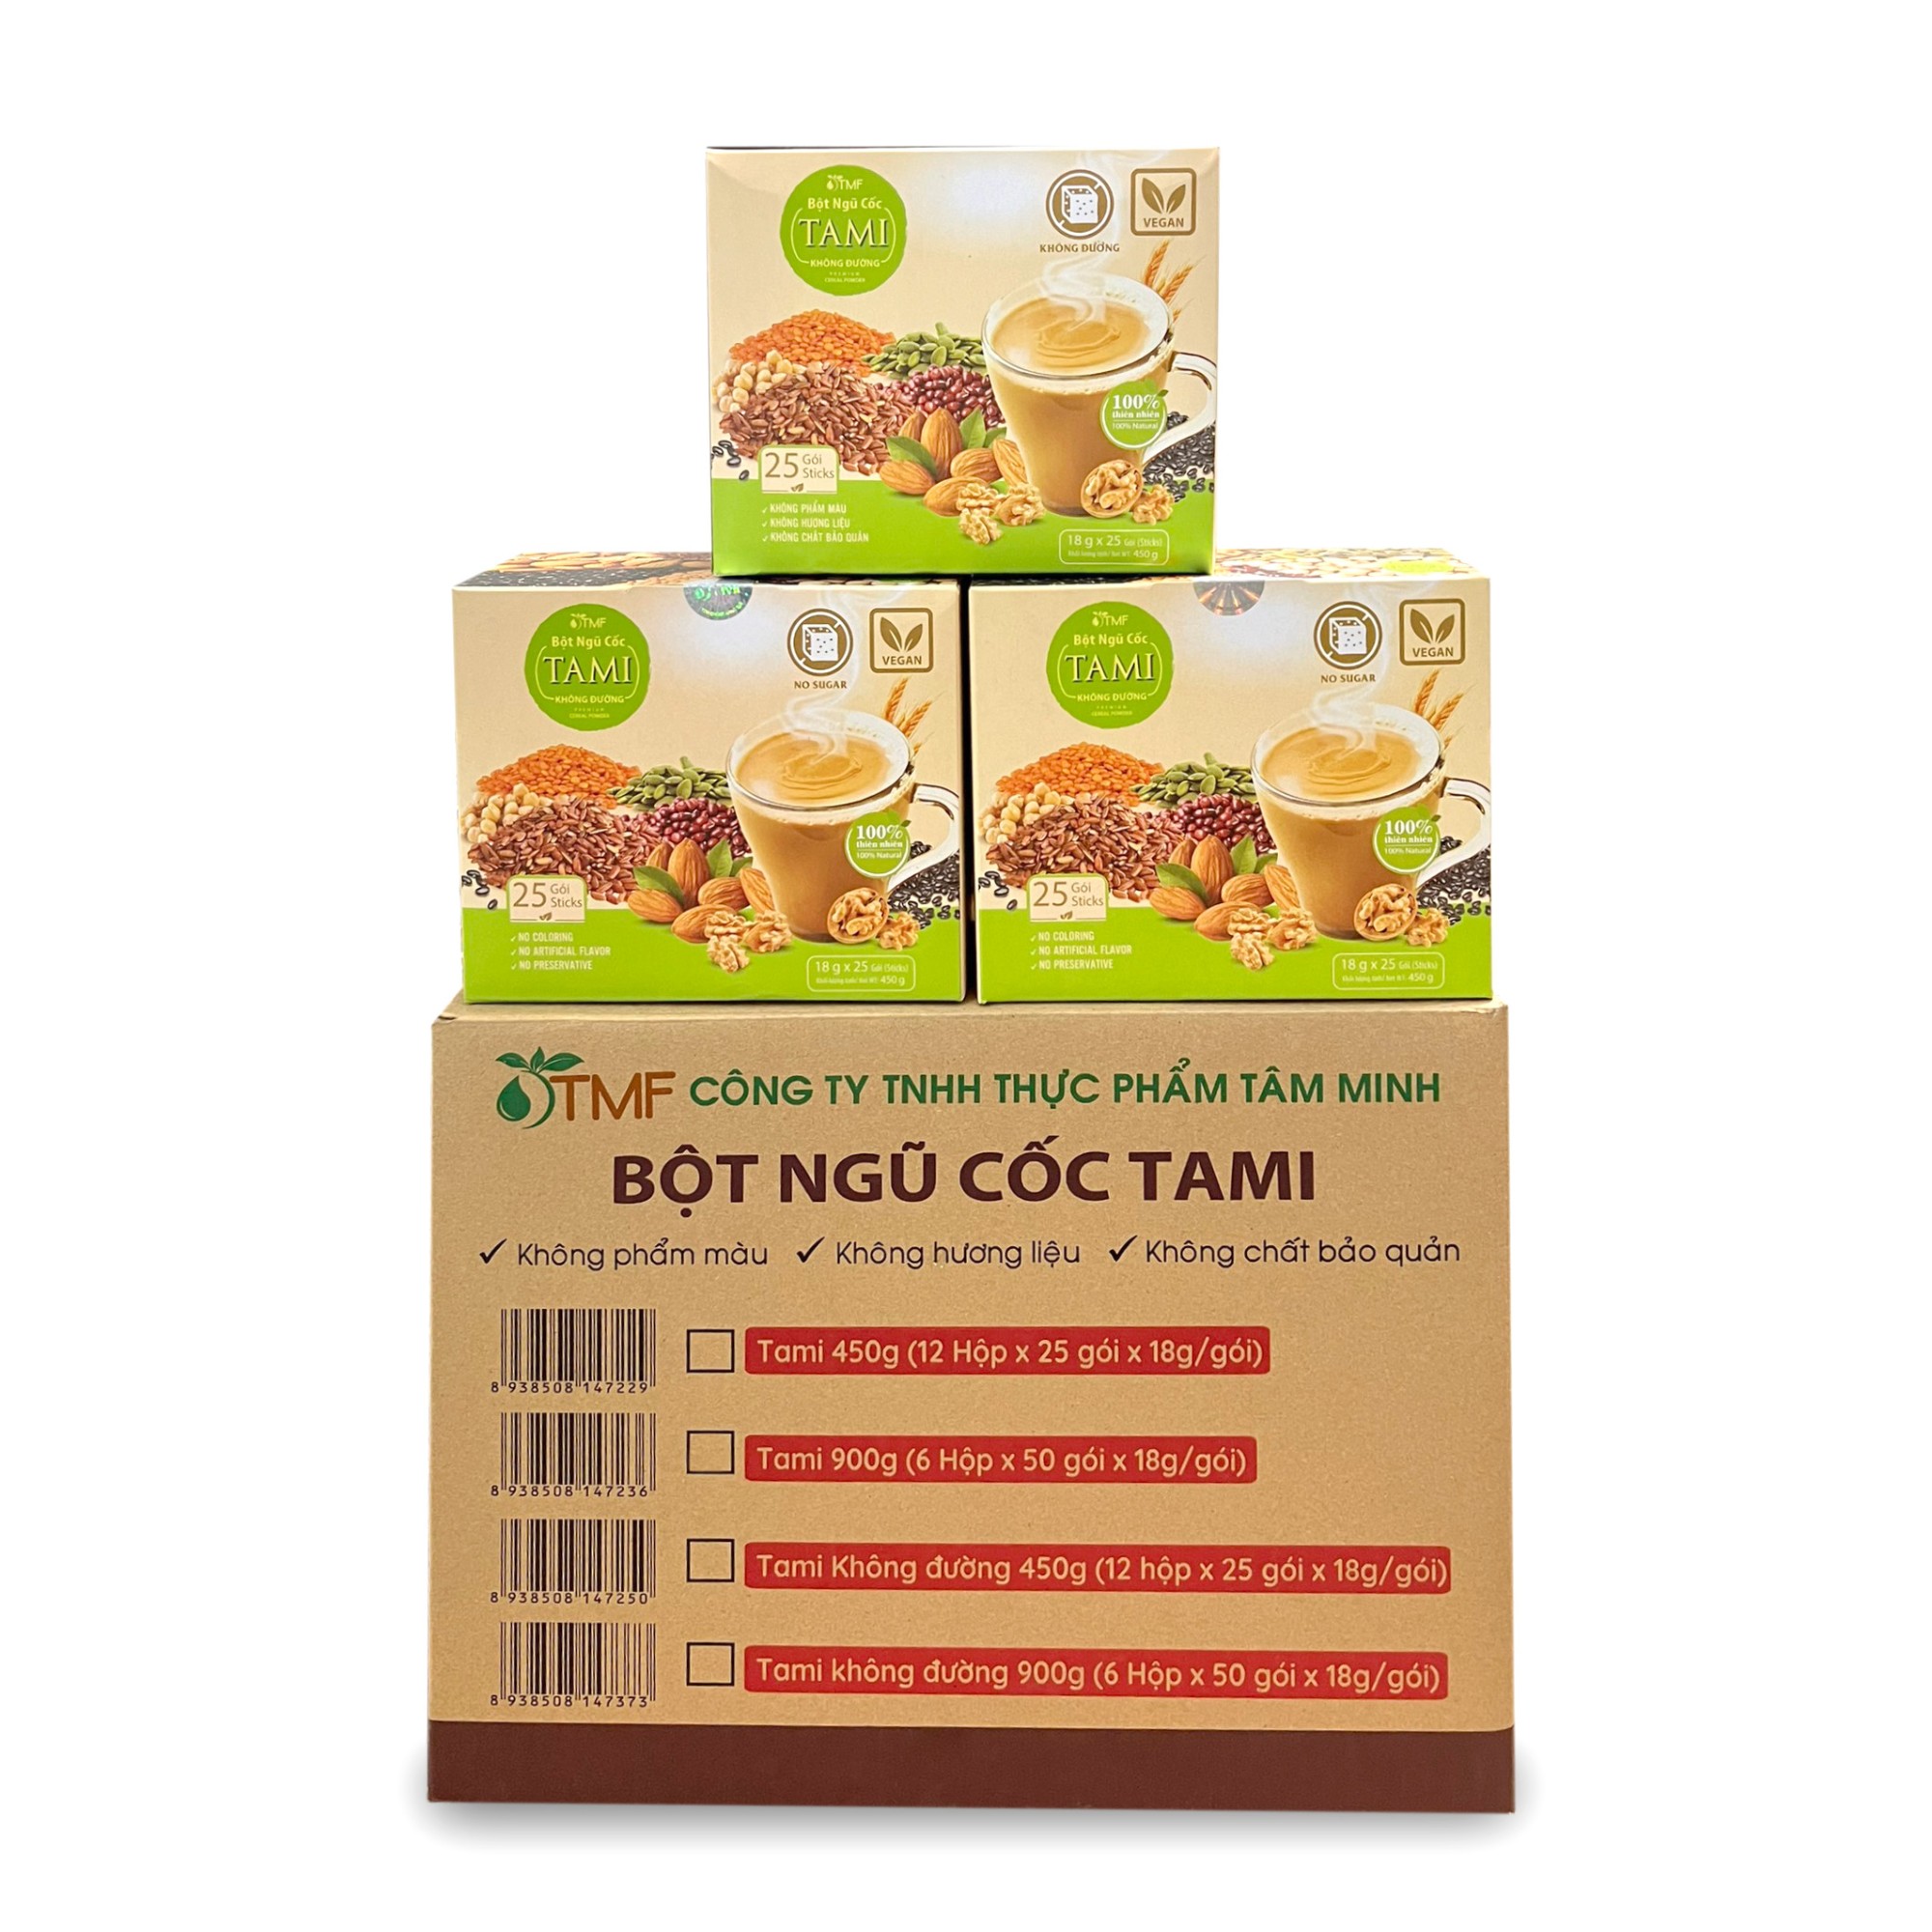 12 BOXES OF TAMI MIX GRAIN POWDER NO SUGAR 450G